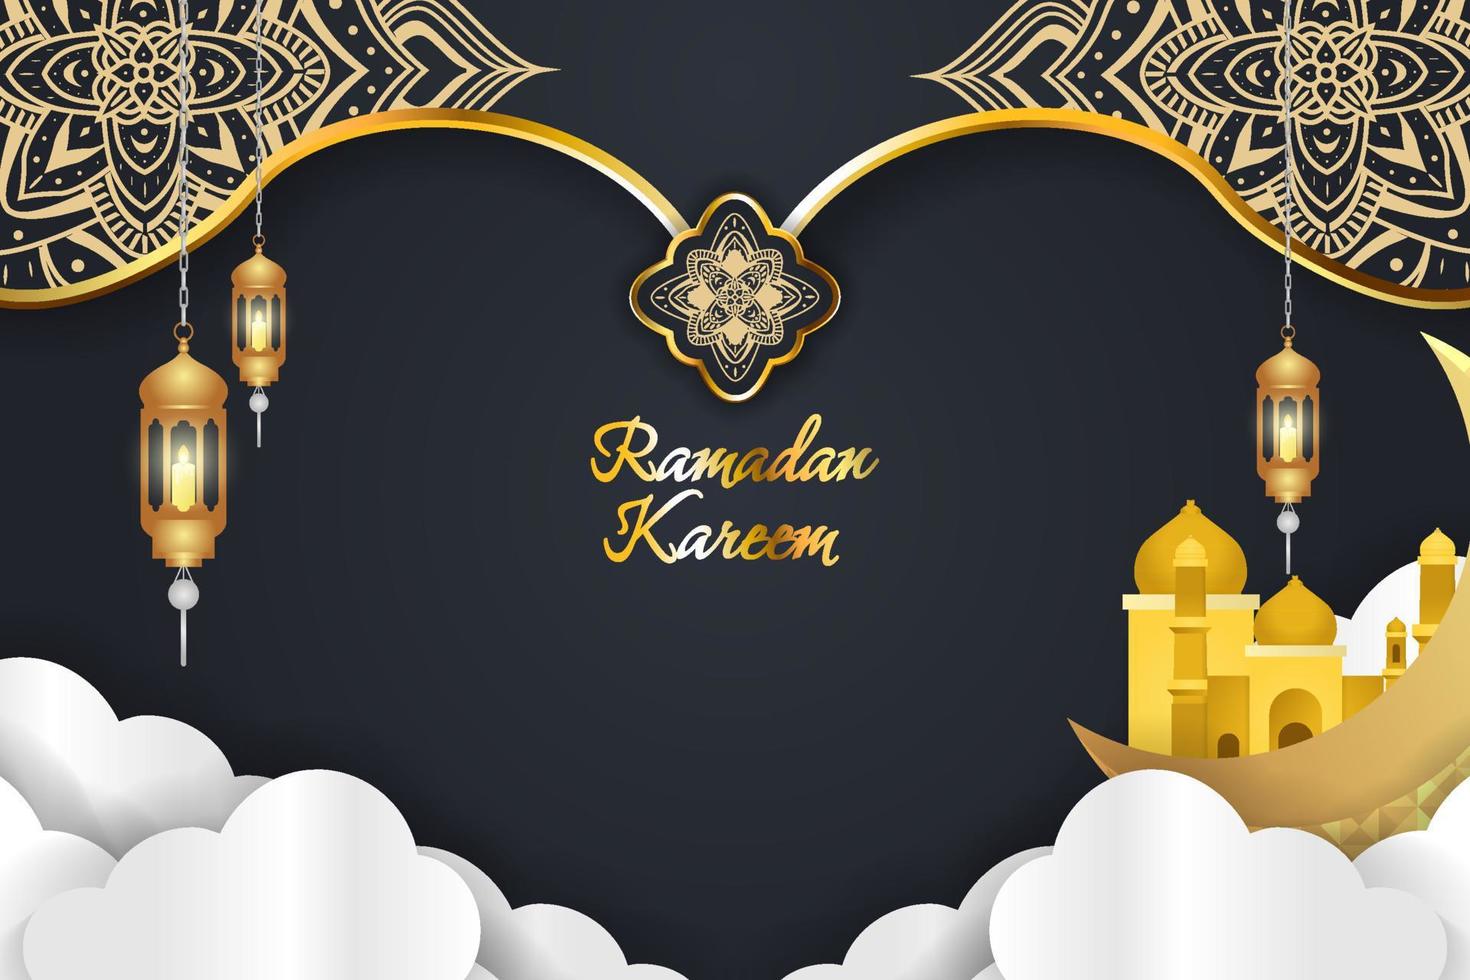 Tận hưởng không khí Ramadan Kareem và hy vọng tinh thần thiêng liêng của ngày lễ bằng bức ảnh cùng chủ đề kết hợp với phông nền đen vàng và đám mây tạo nên cảnh tượng tràn đầy sắc màu và tinh thần của đạo Hồi.